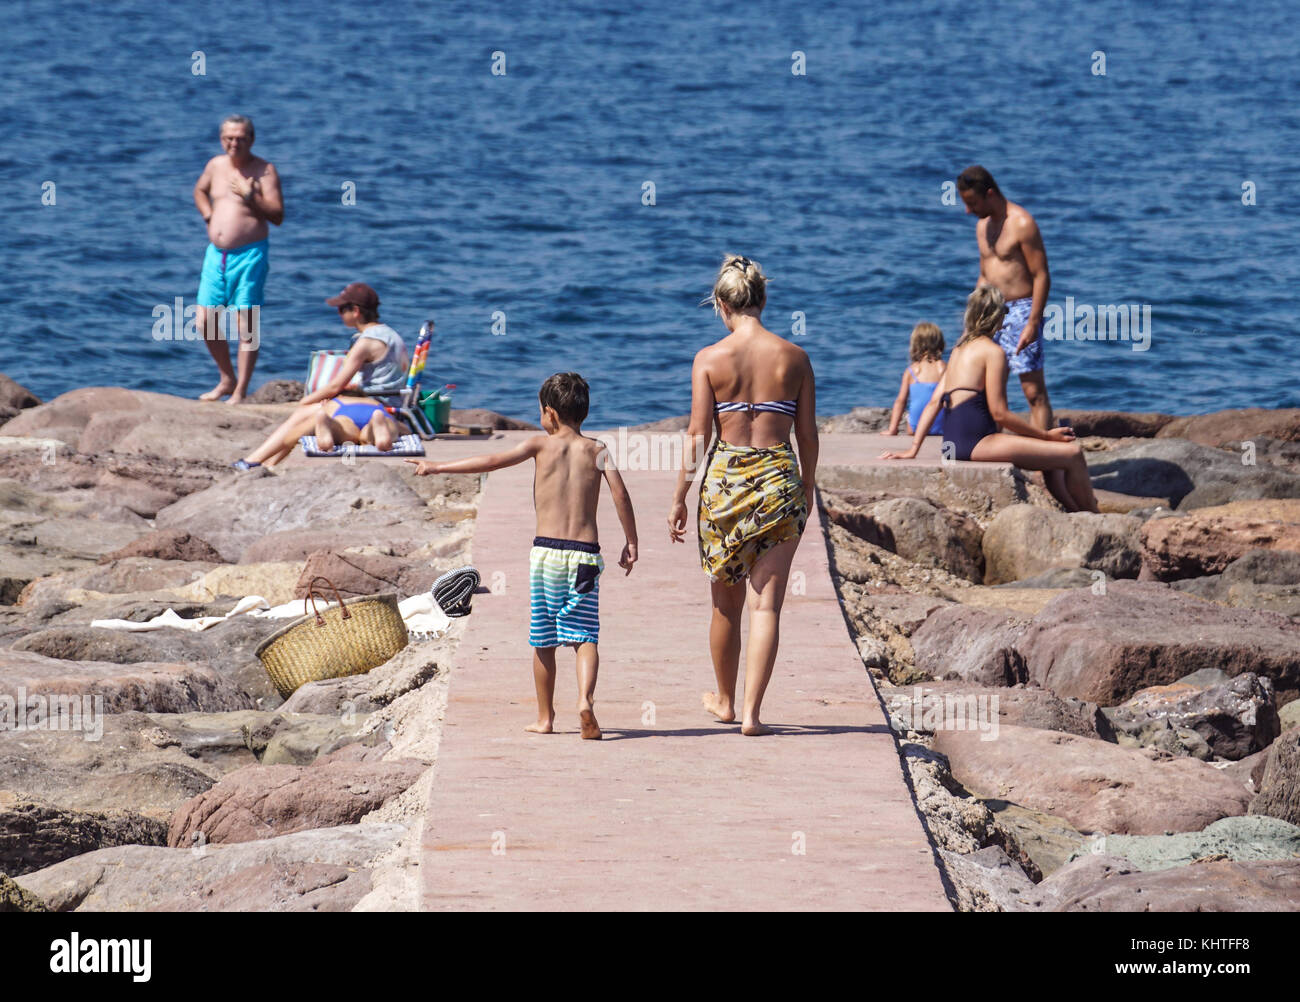 Nizza Frankreich, 15. August 2017: Rückansicht von Mather und Kind zu Fuß auf den felsigen Dock am Meer an einem heißen Sommertag Stockfoto